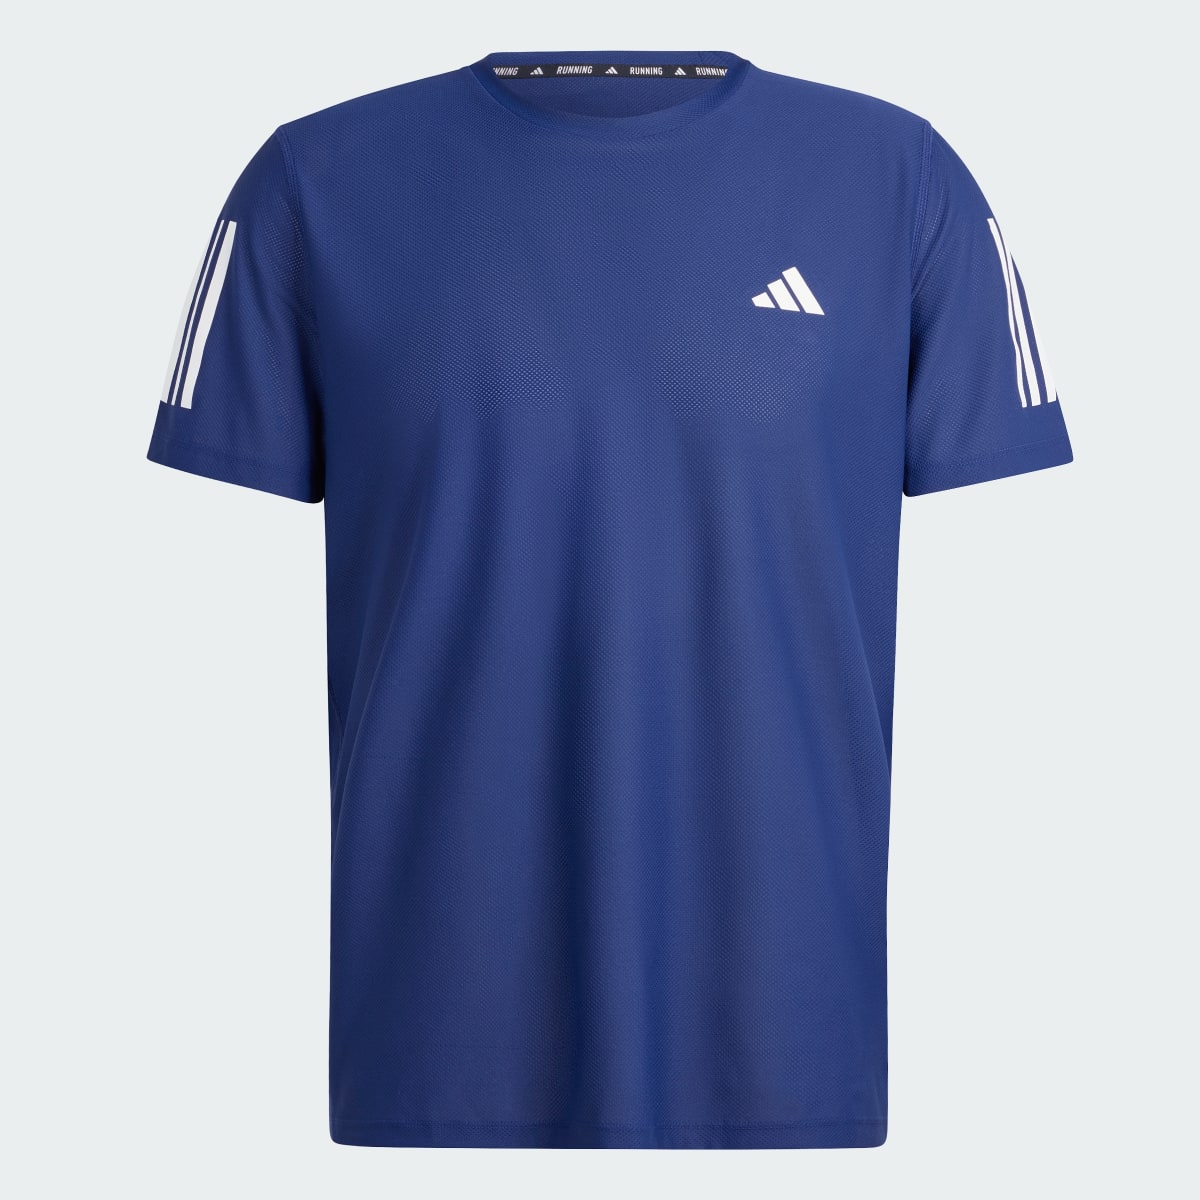 Adidas T-shirt Own the Run. 5